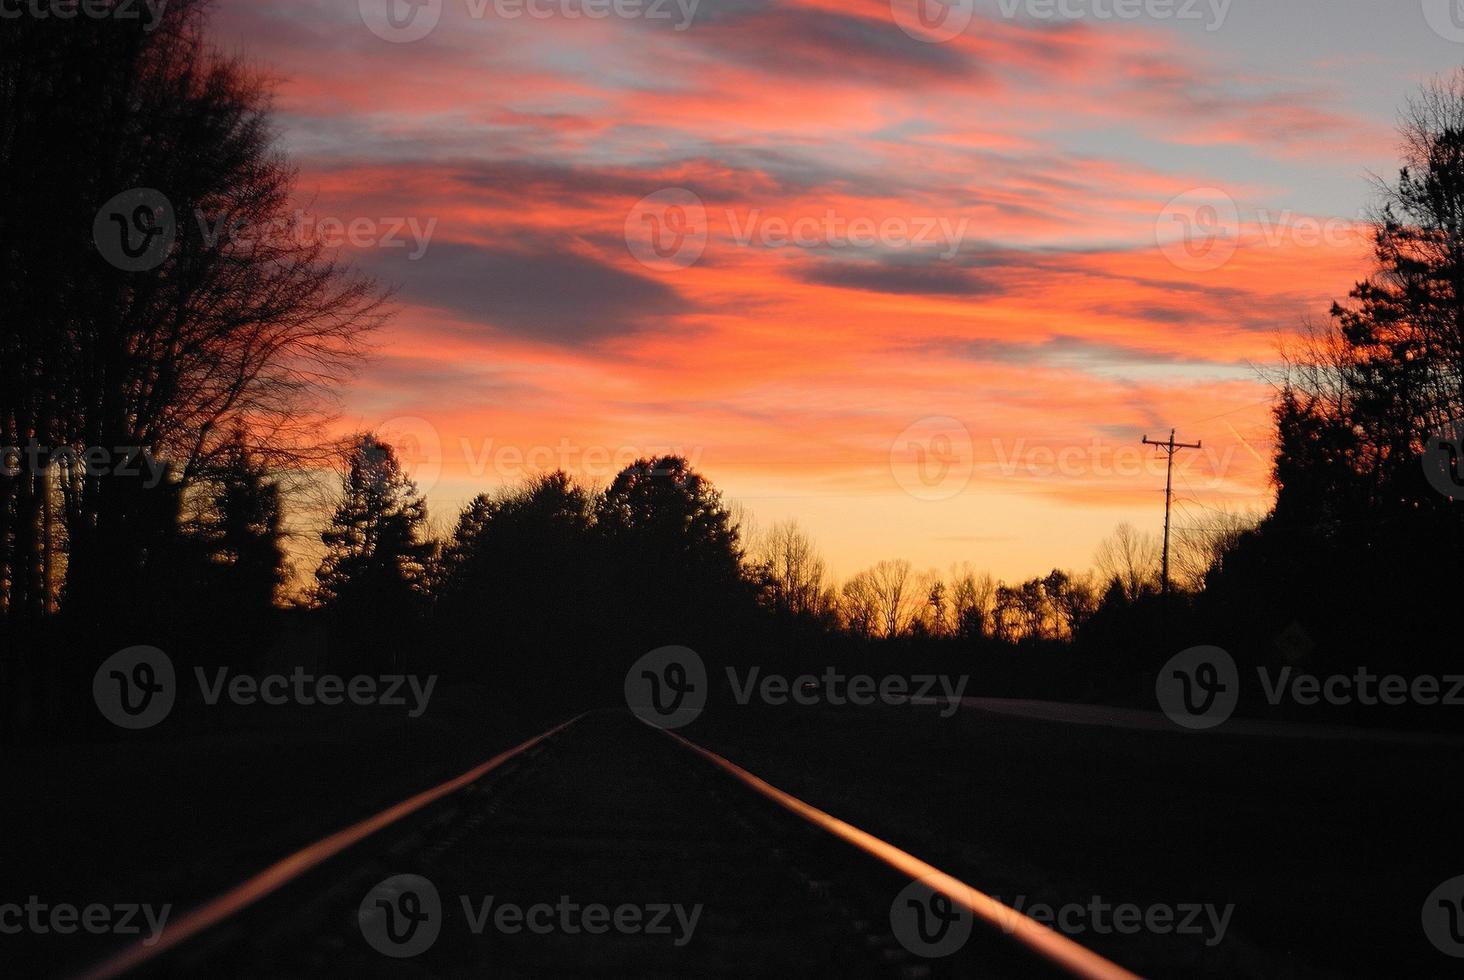 reflexos do pôr do sol nos trilhos da ferrovia foto